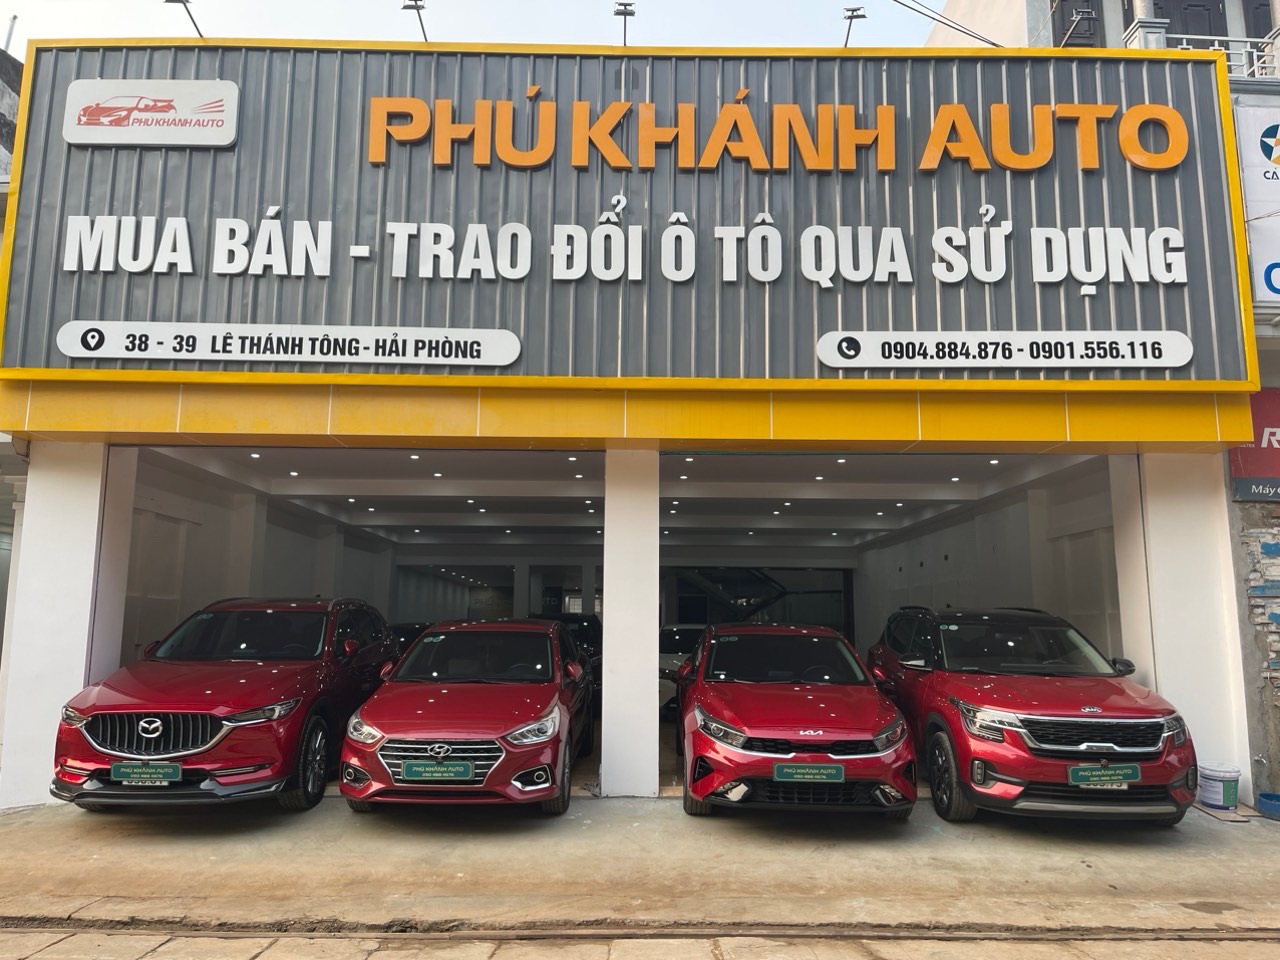 Phú Khánh Auto